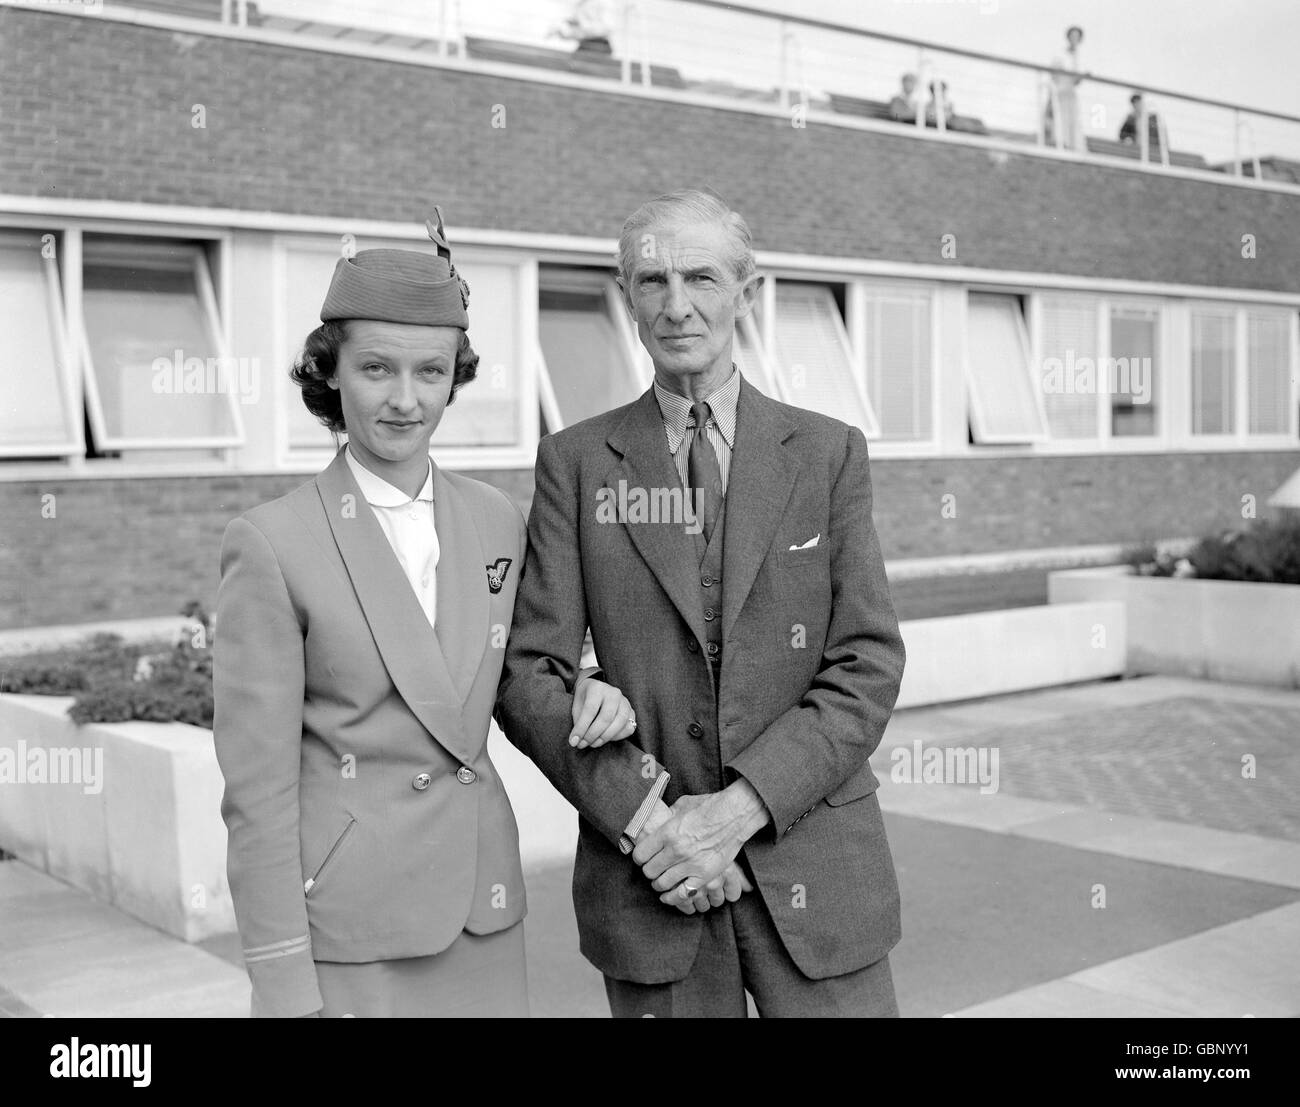 Susan Cramsie, Stewardess der British European Airways, am Flughafen London mit ihrem Vater, dem Rennpferdetrainer JRB Cramsie. Sie wurde schwer verletzt, als eine Bombe in einem von Paris gebundenen Viking Airliner explodierte. Stockfoto